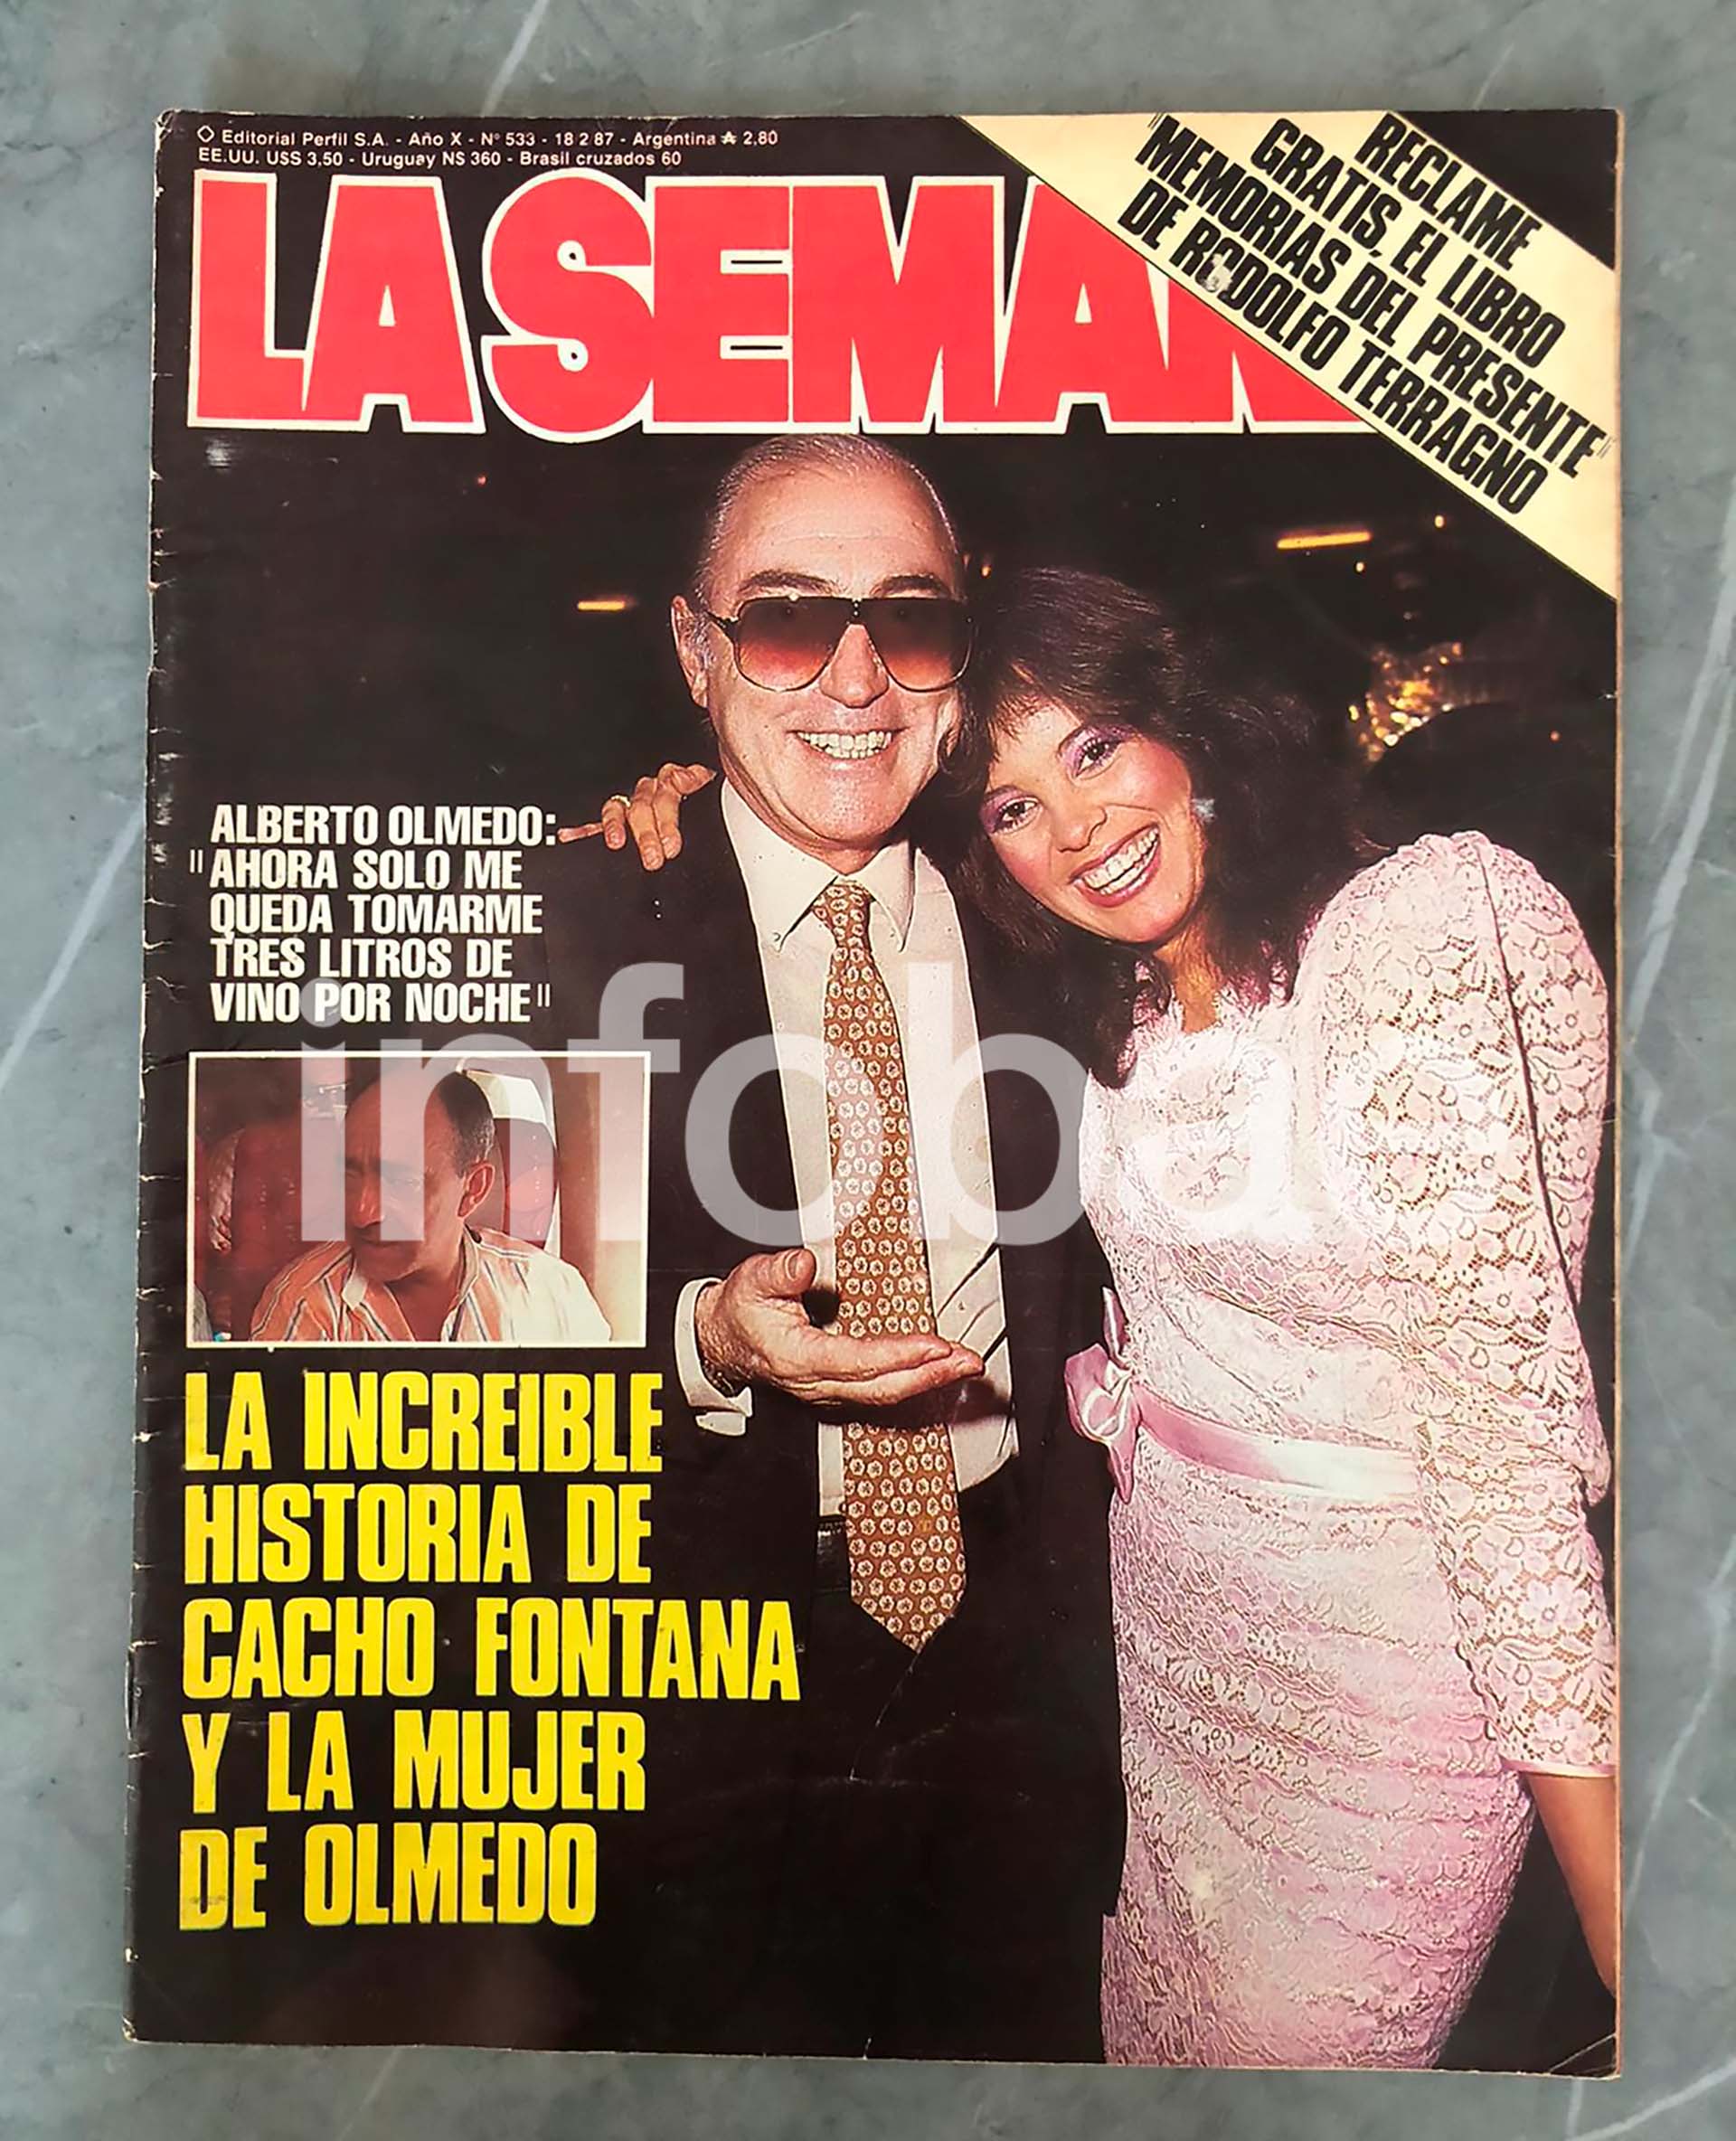 Las principales revistas de actualidad y de espectáculos hablaron durante semanas de la relación entre Nancy Herrera y Cacho Fontana. Olmedo se separó de Nancy y trató de evitar al periodismo